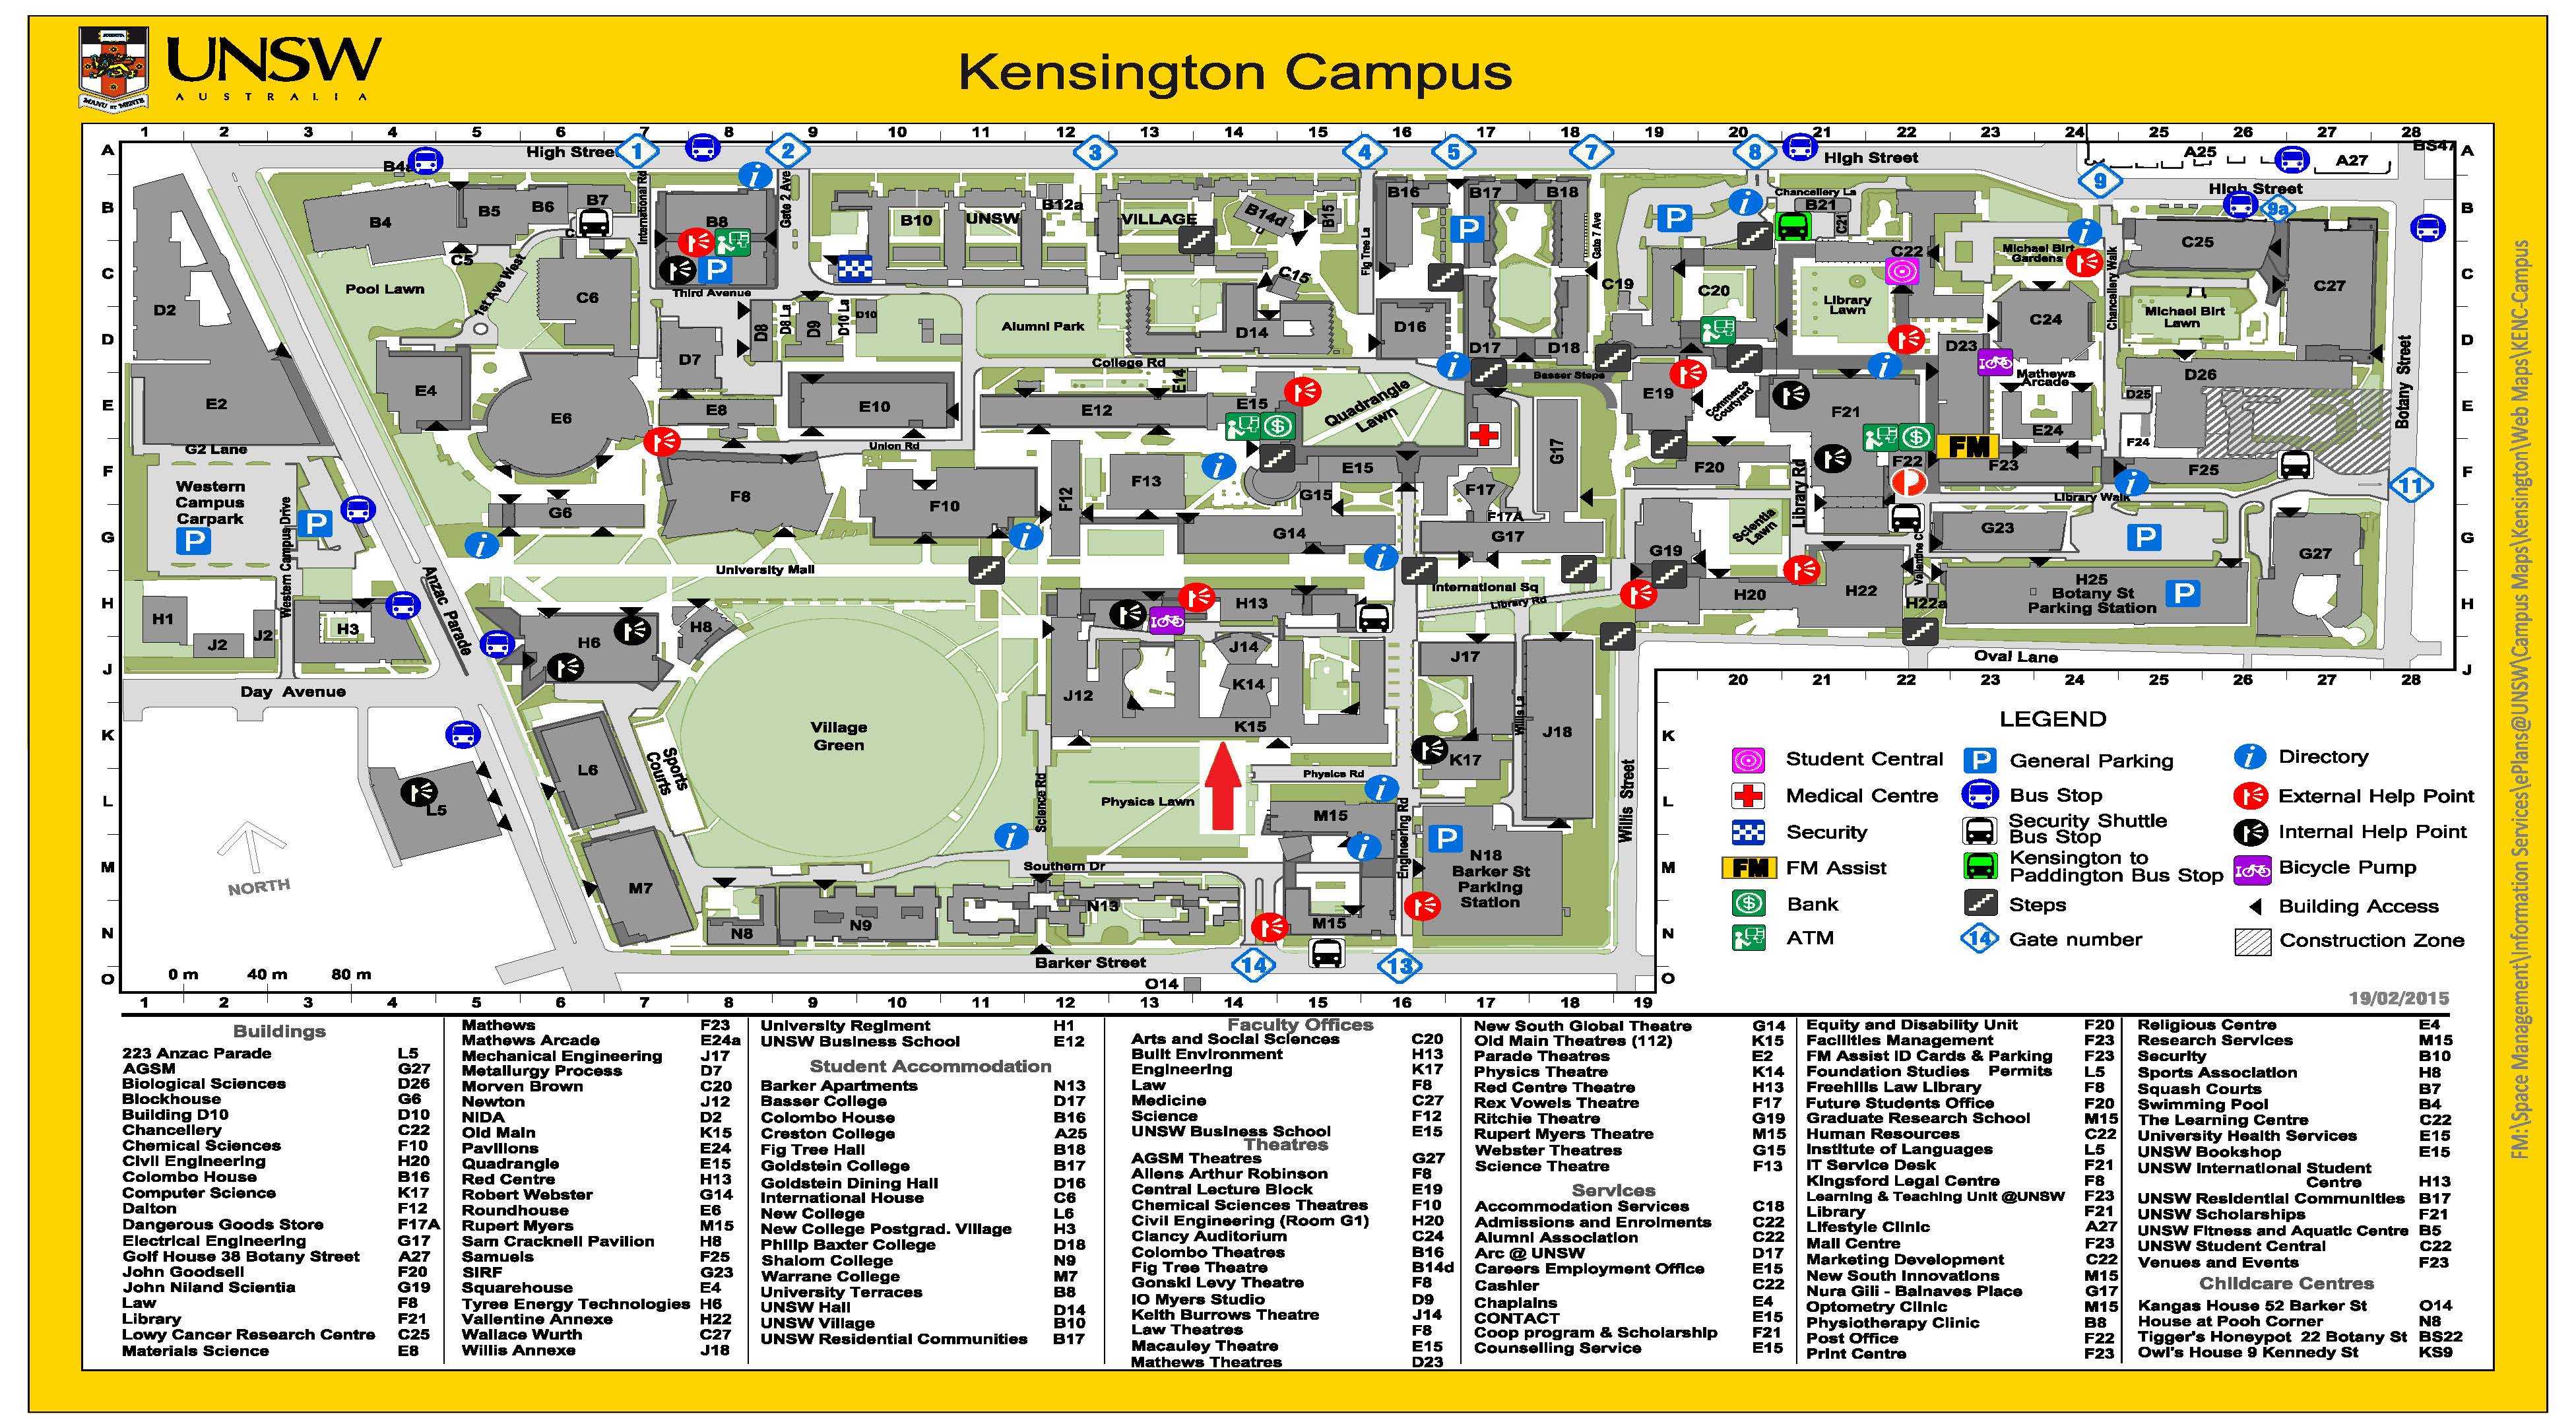 WhiteKnights Campus Map